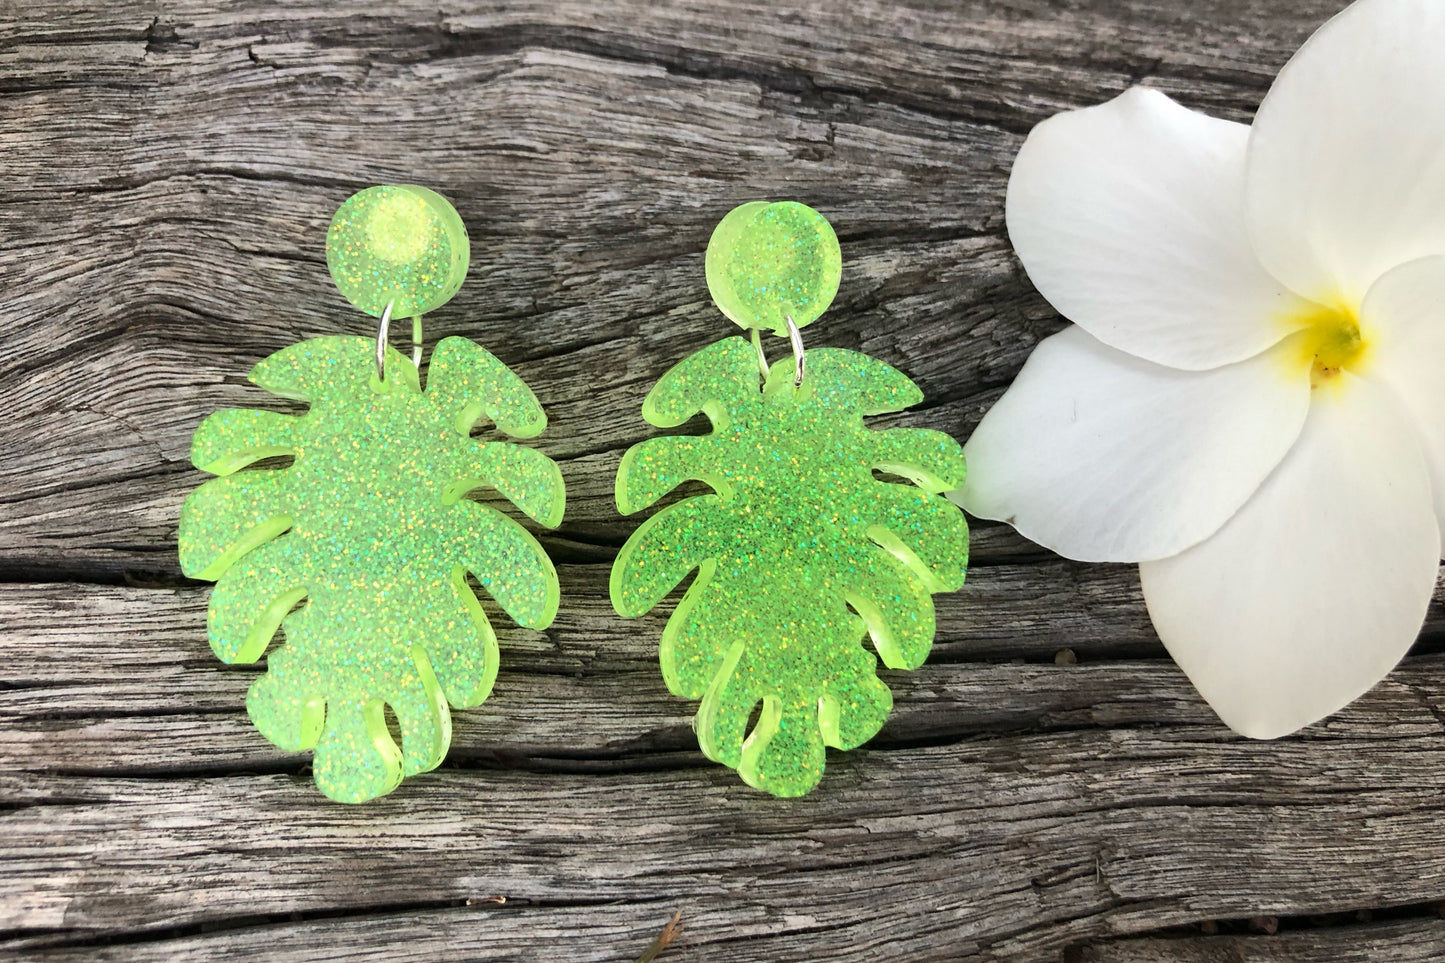 Fluro resin leaf earrings